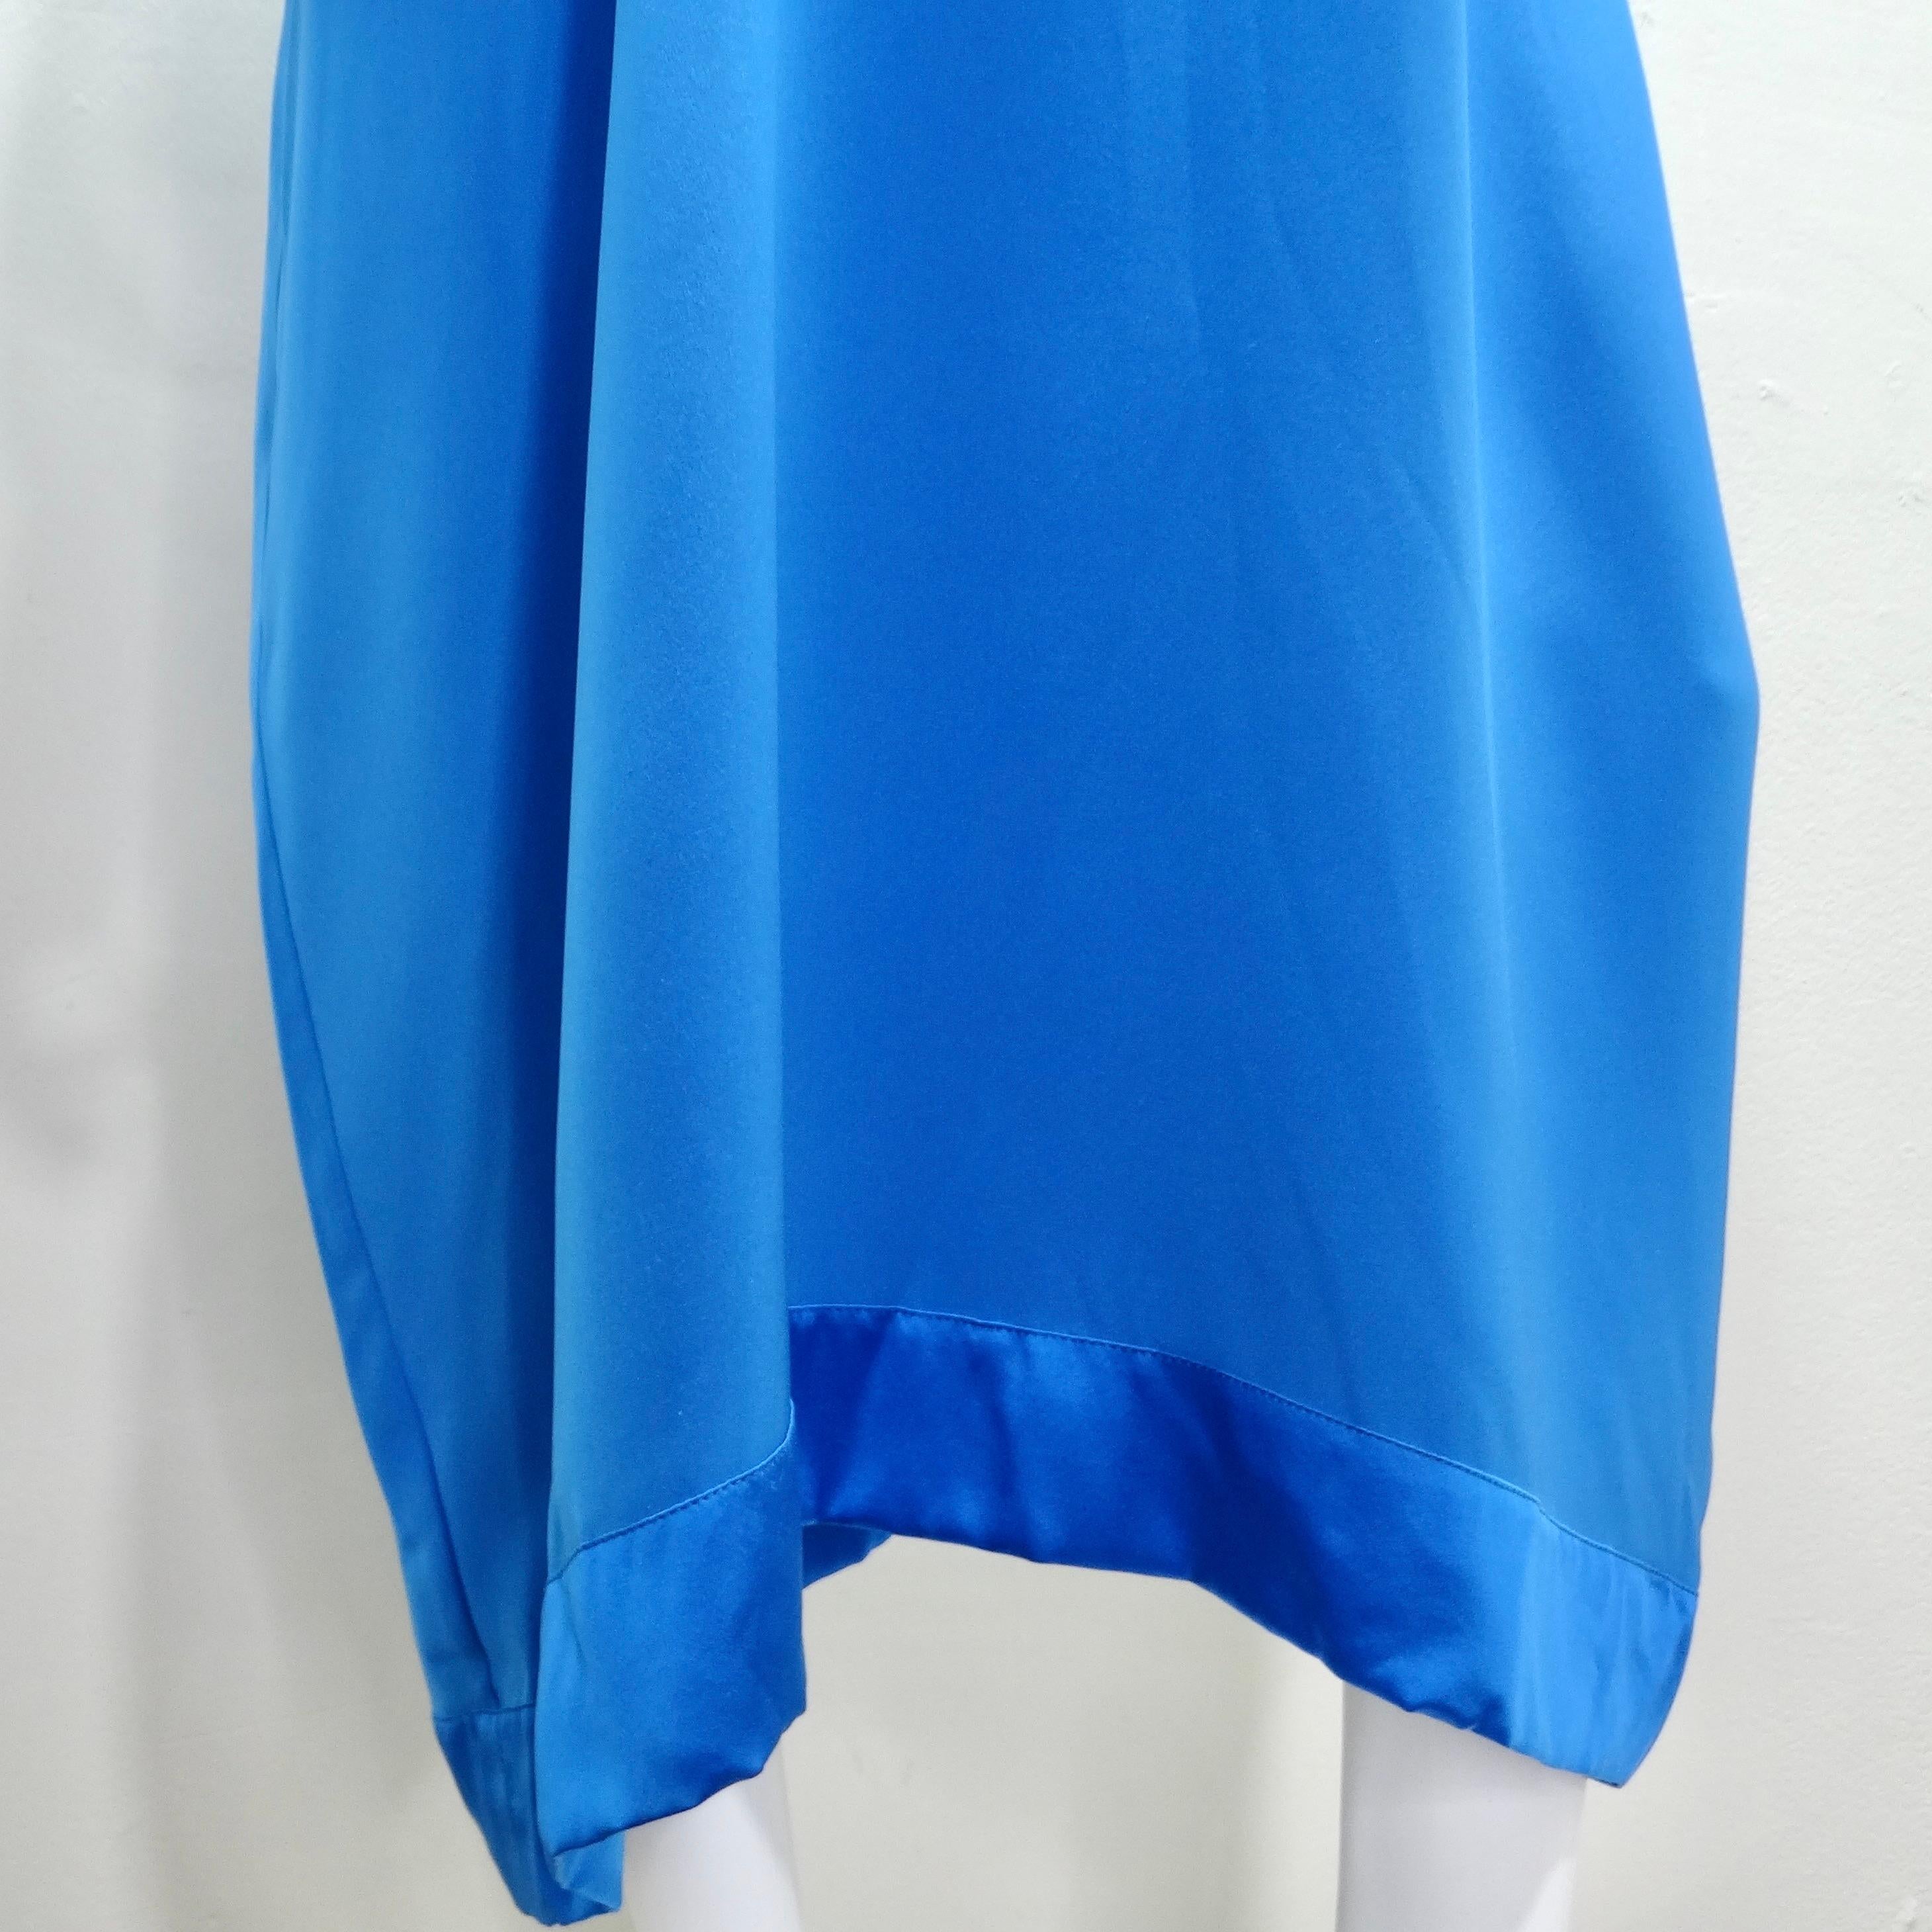 La robe kaftan bleue Albert Capraro des années 1970 semble être une pièce vintage fabuleuse avec sa couleur bleu cobalt frappante et son design élégant.

Le style kaftan est connu pour sa silhouette ample et fluide, ce qui le rend confortable et